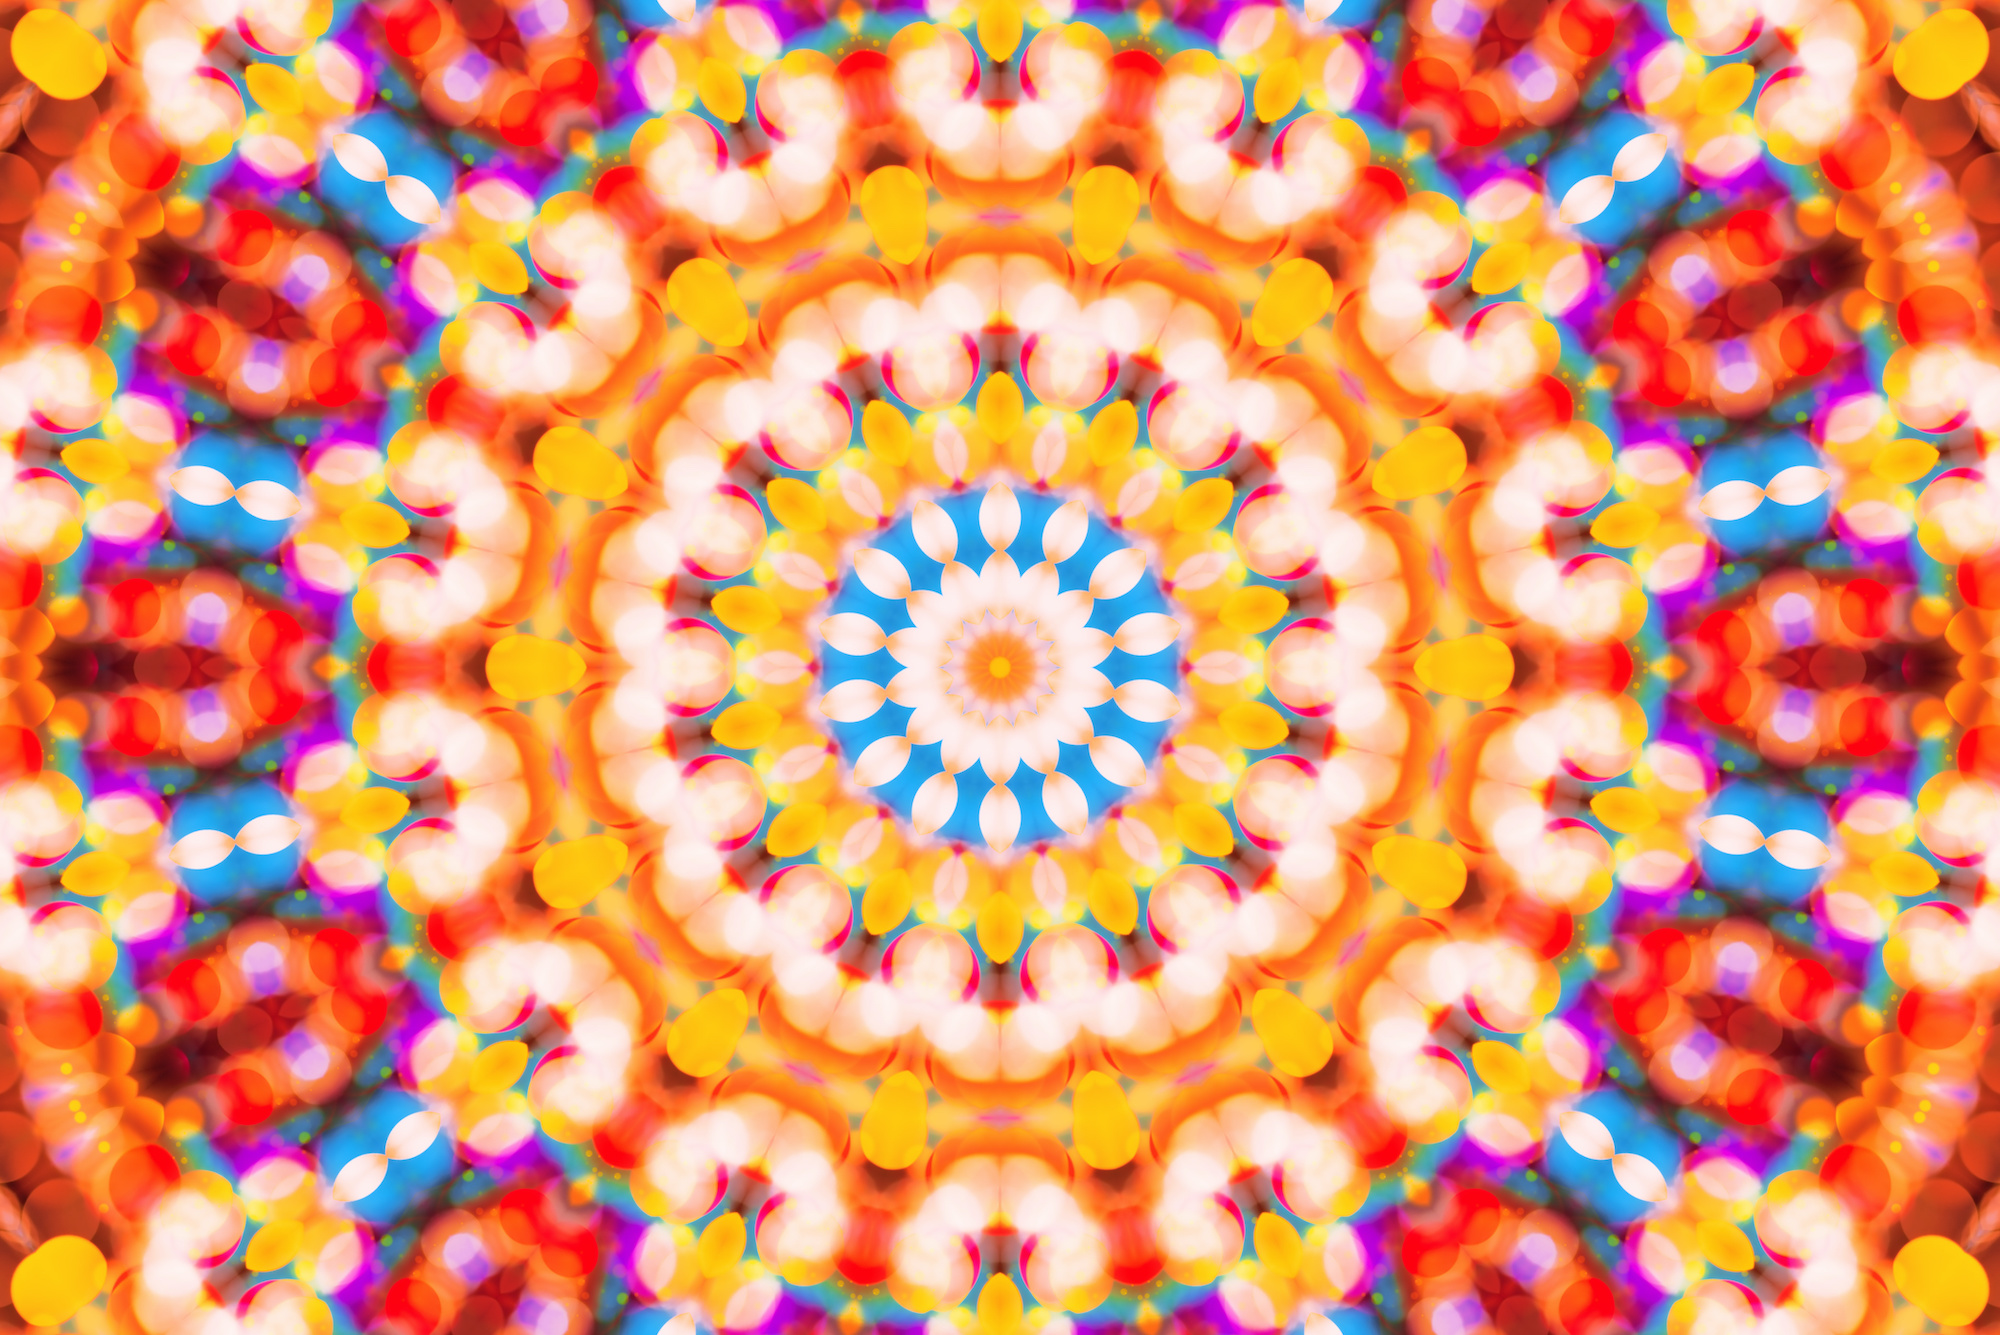 Les motifs colorés formés par le kaléidoscope peuvent varier à l’infini. © Bits and Splits, Adobe Stock